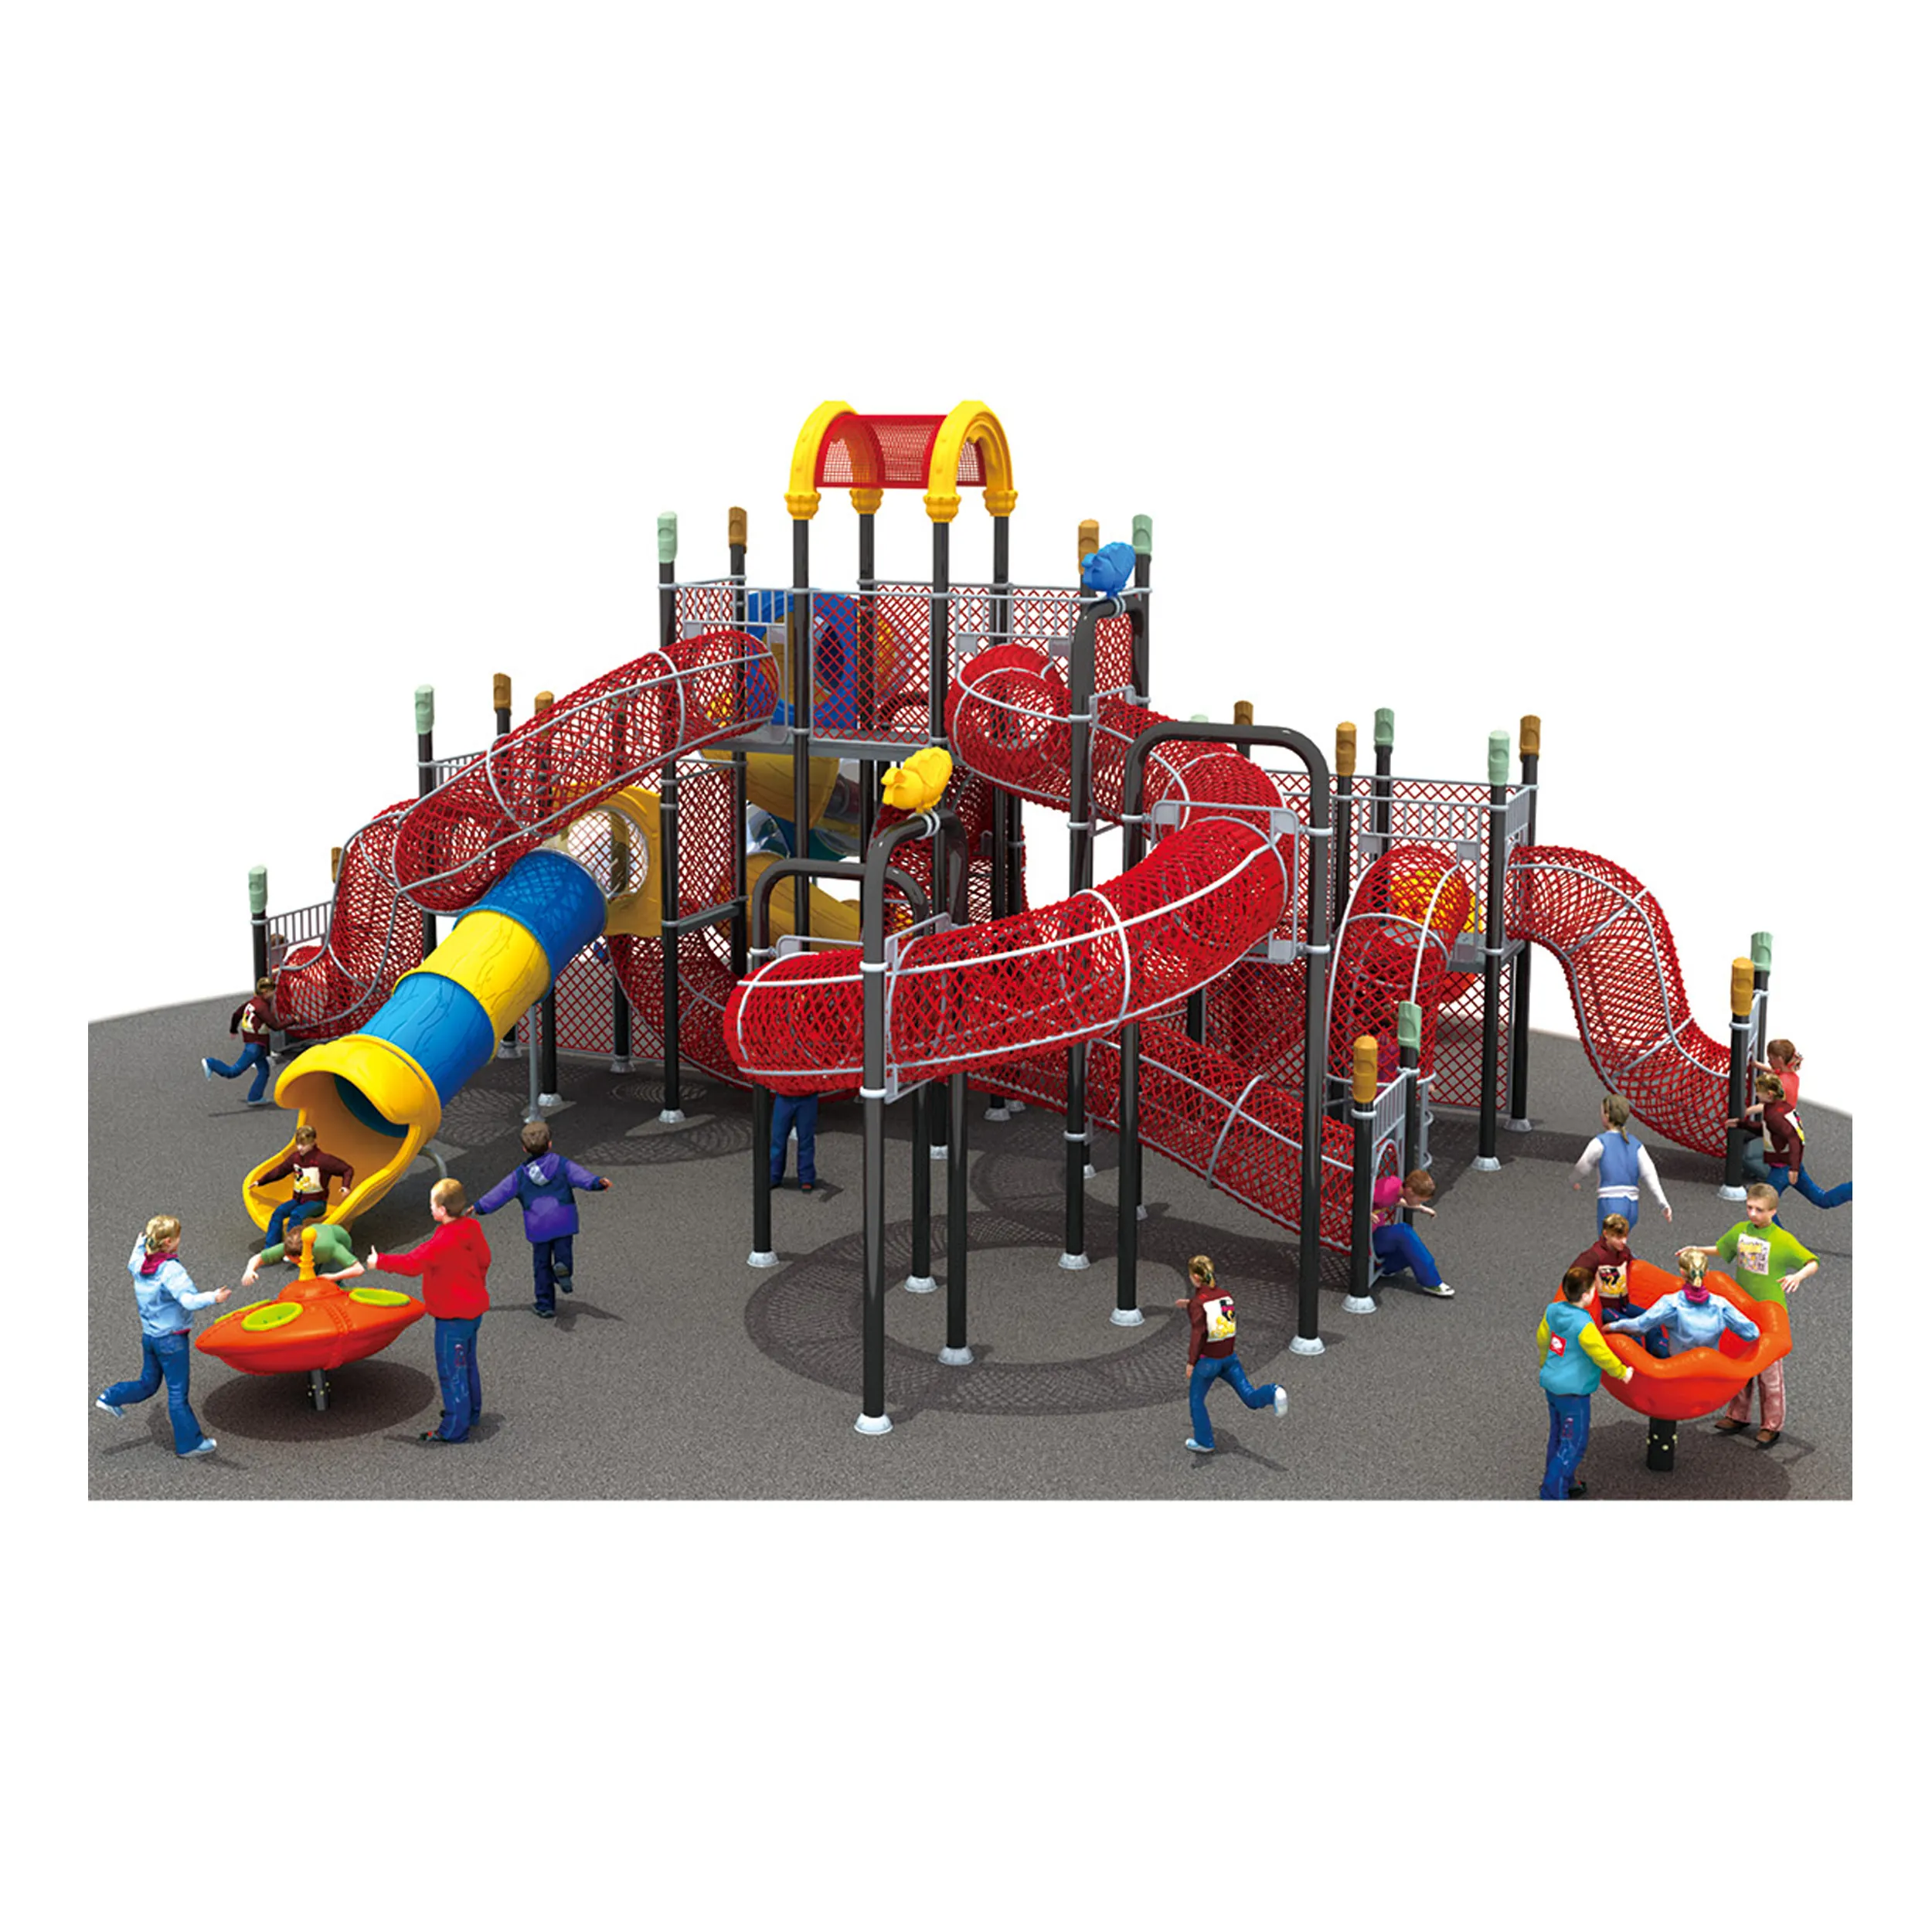 Novo estilo Parque exterior plástico Playground Set Multi-funcional exterior plástico crianças Playground